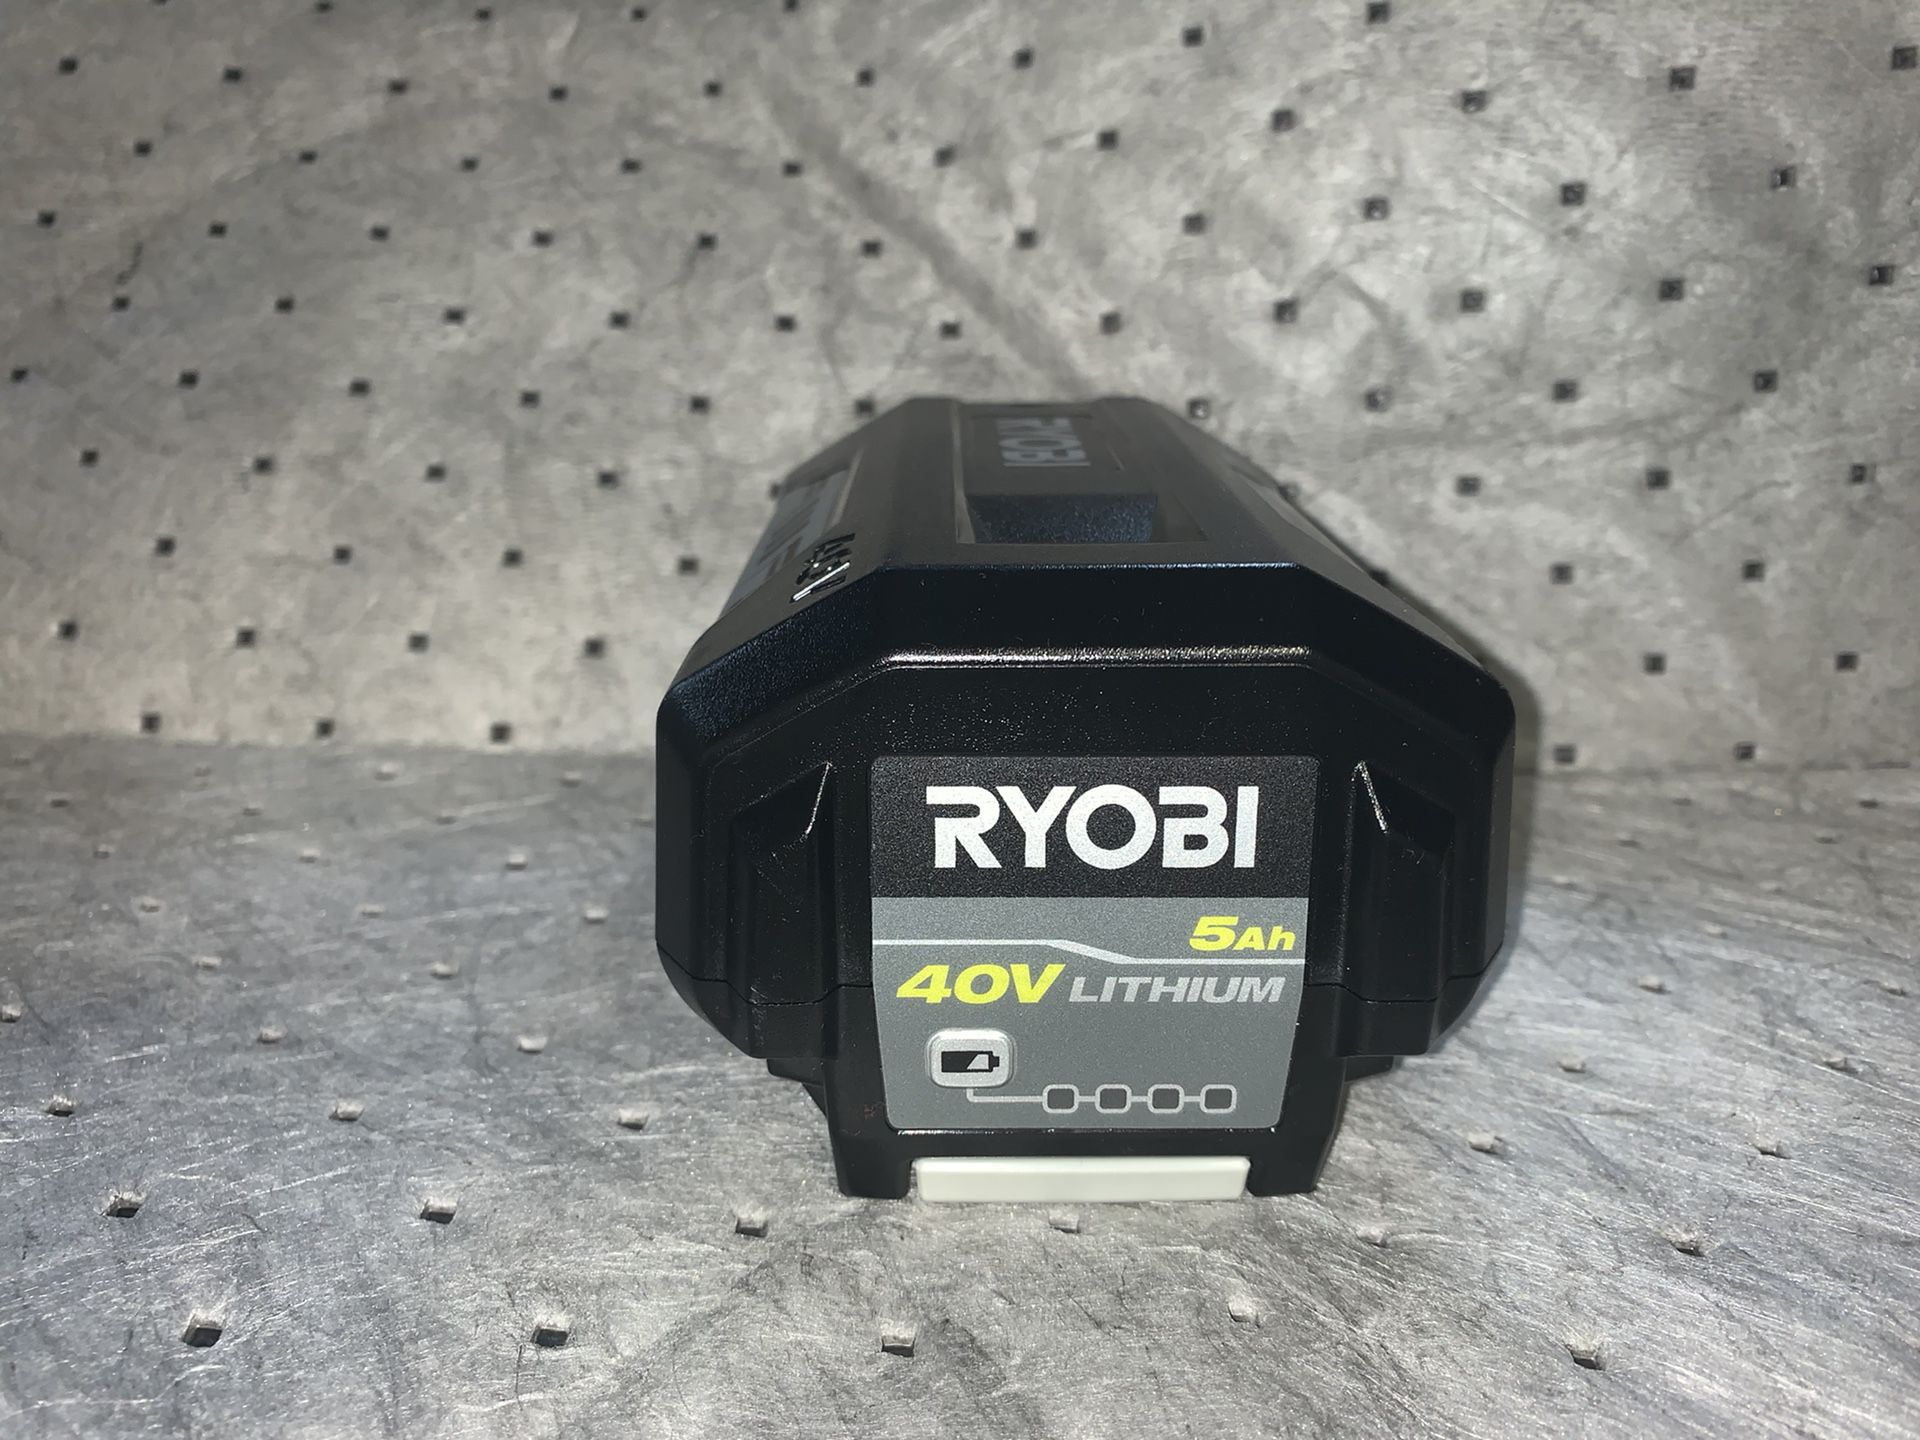 Ryobi 40v lithium battery